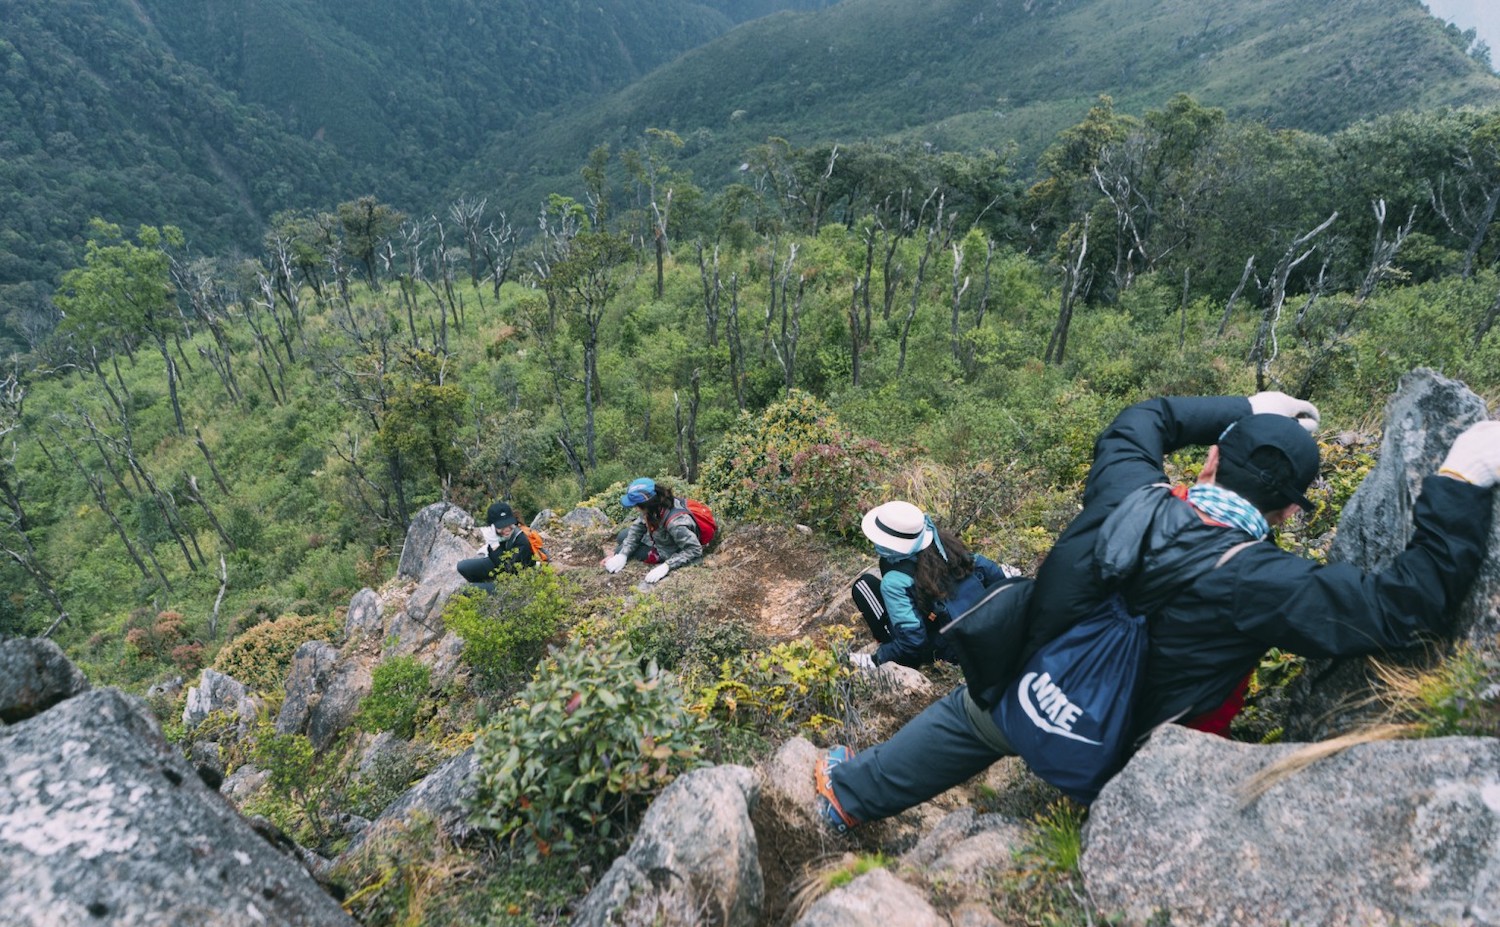 Ghim liền tay Kinh nghiệm trekking Tà Xùa - Yên Bái dành cho team mê phượt 12